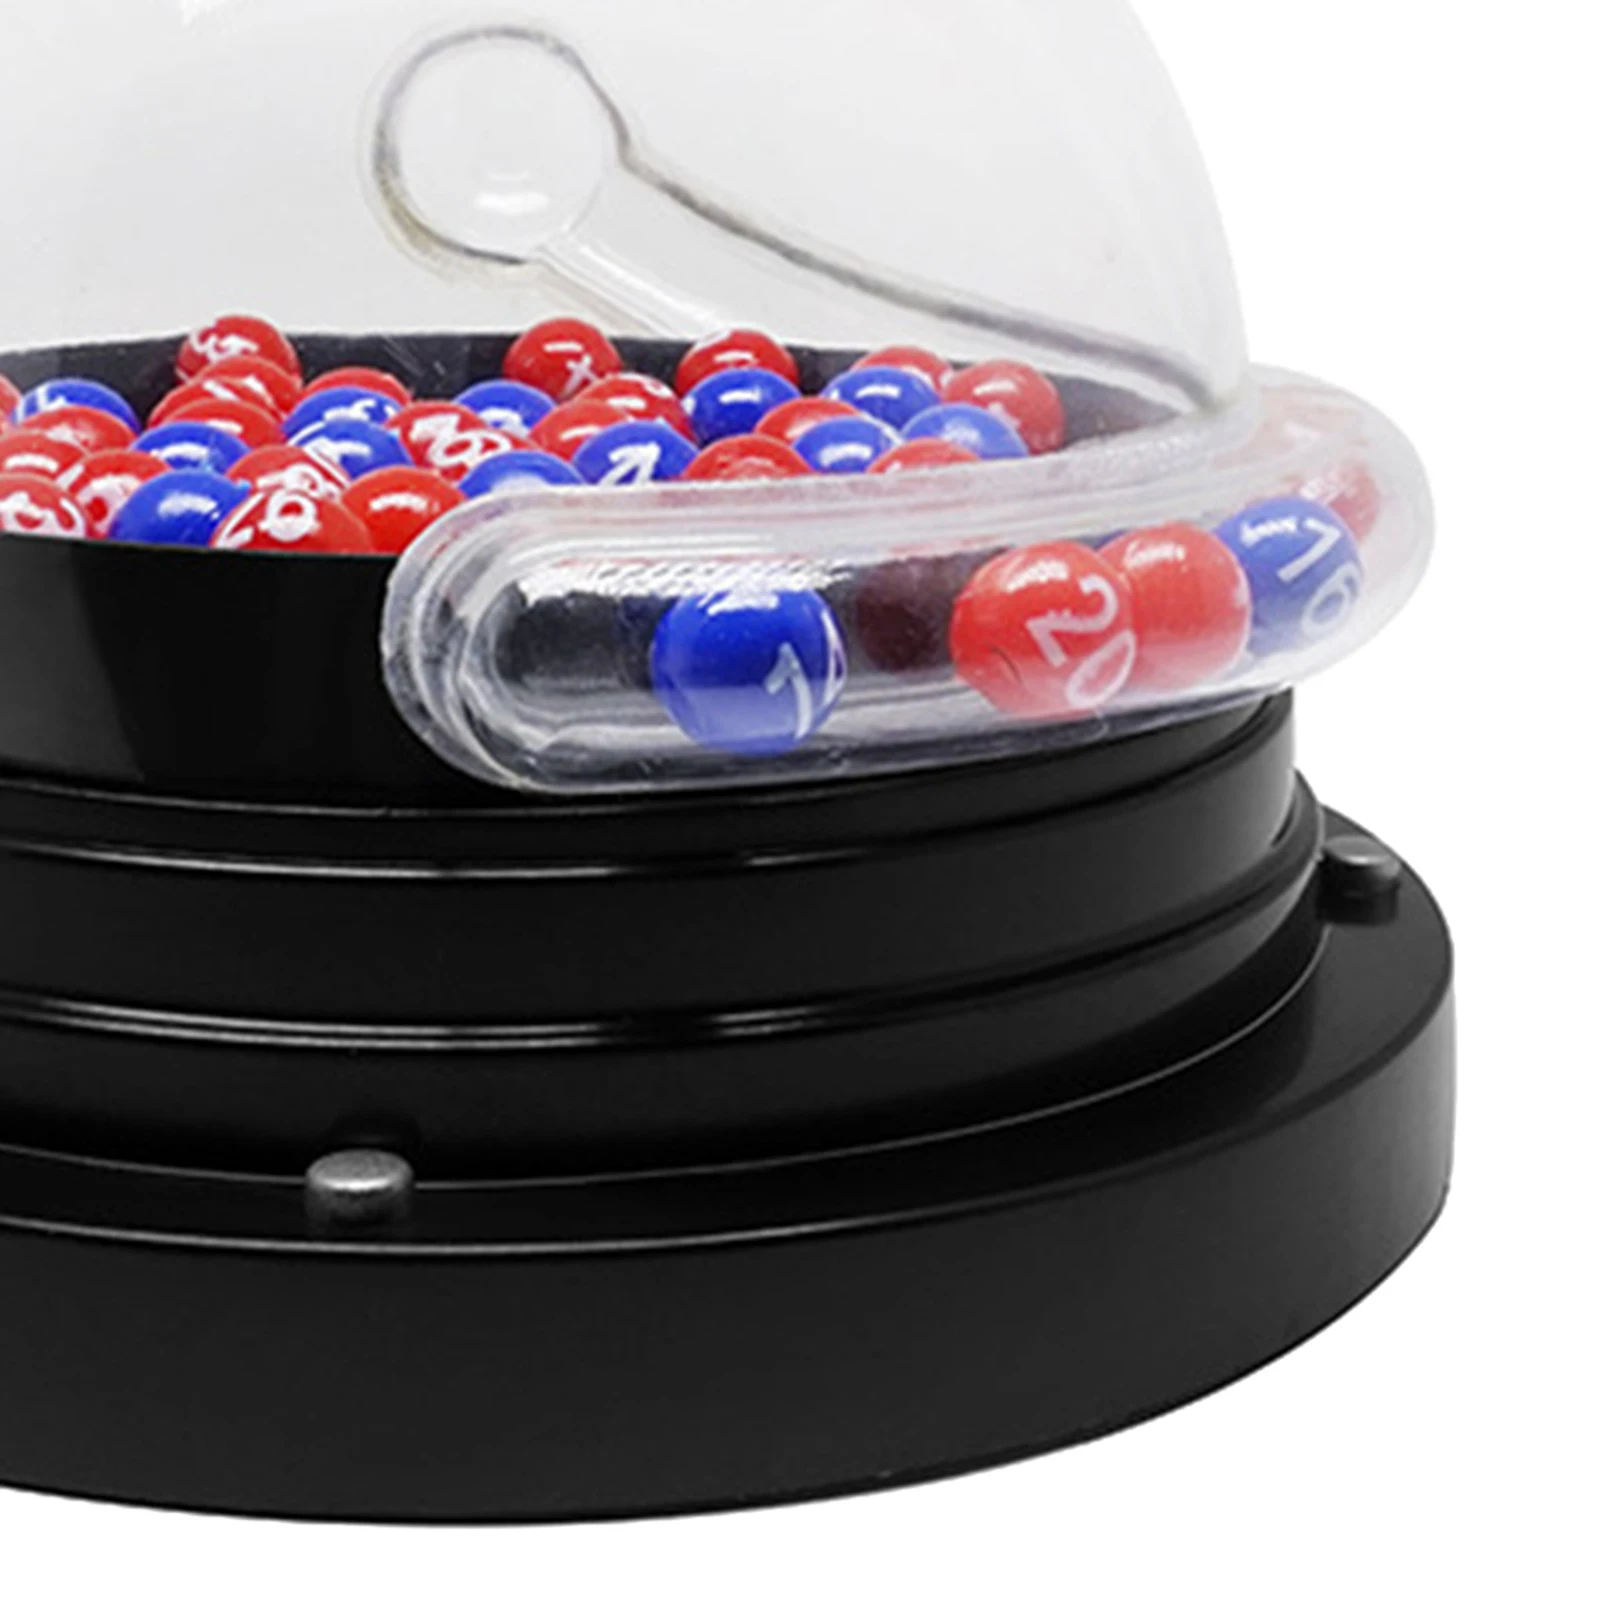 Lotto Bingo Game Bingo Machine With Bingo Balls Souvenirs Games